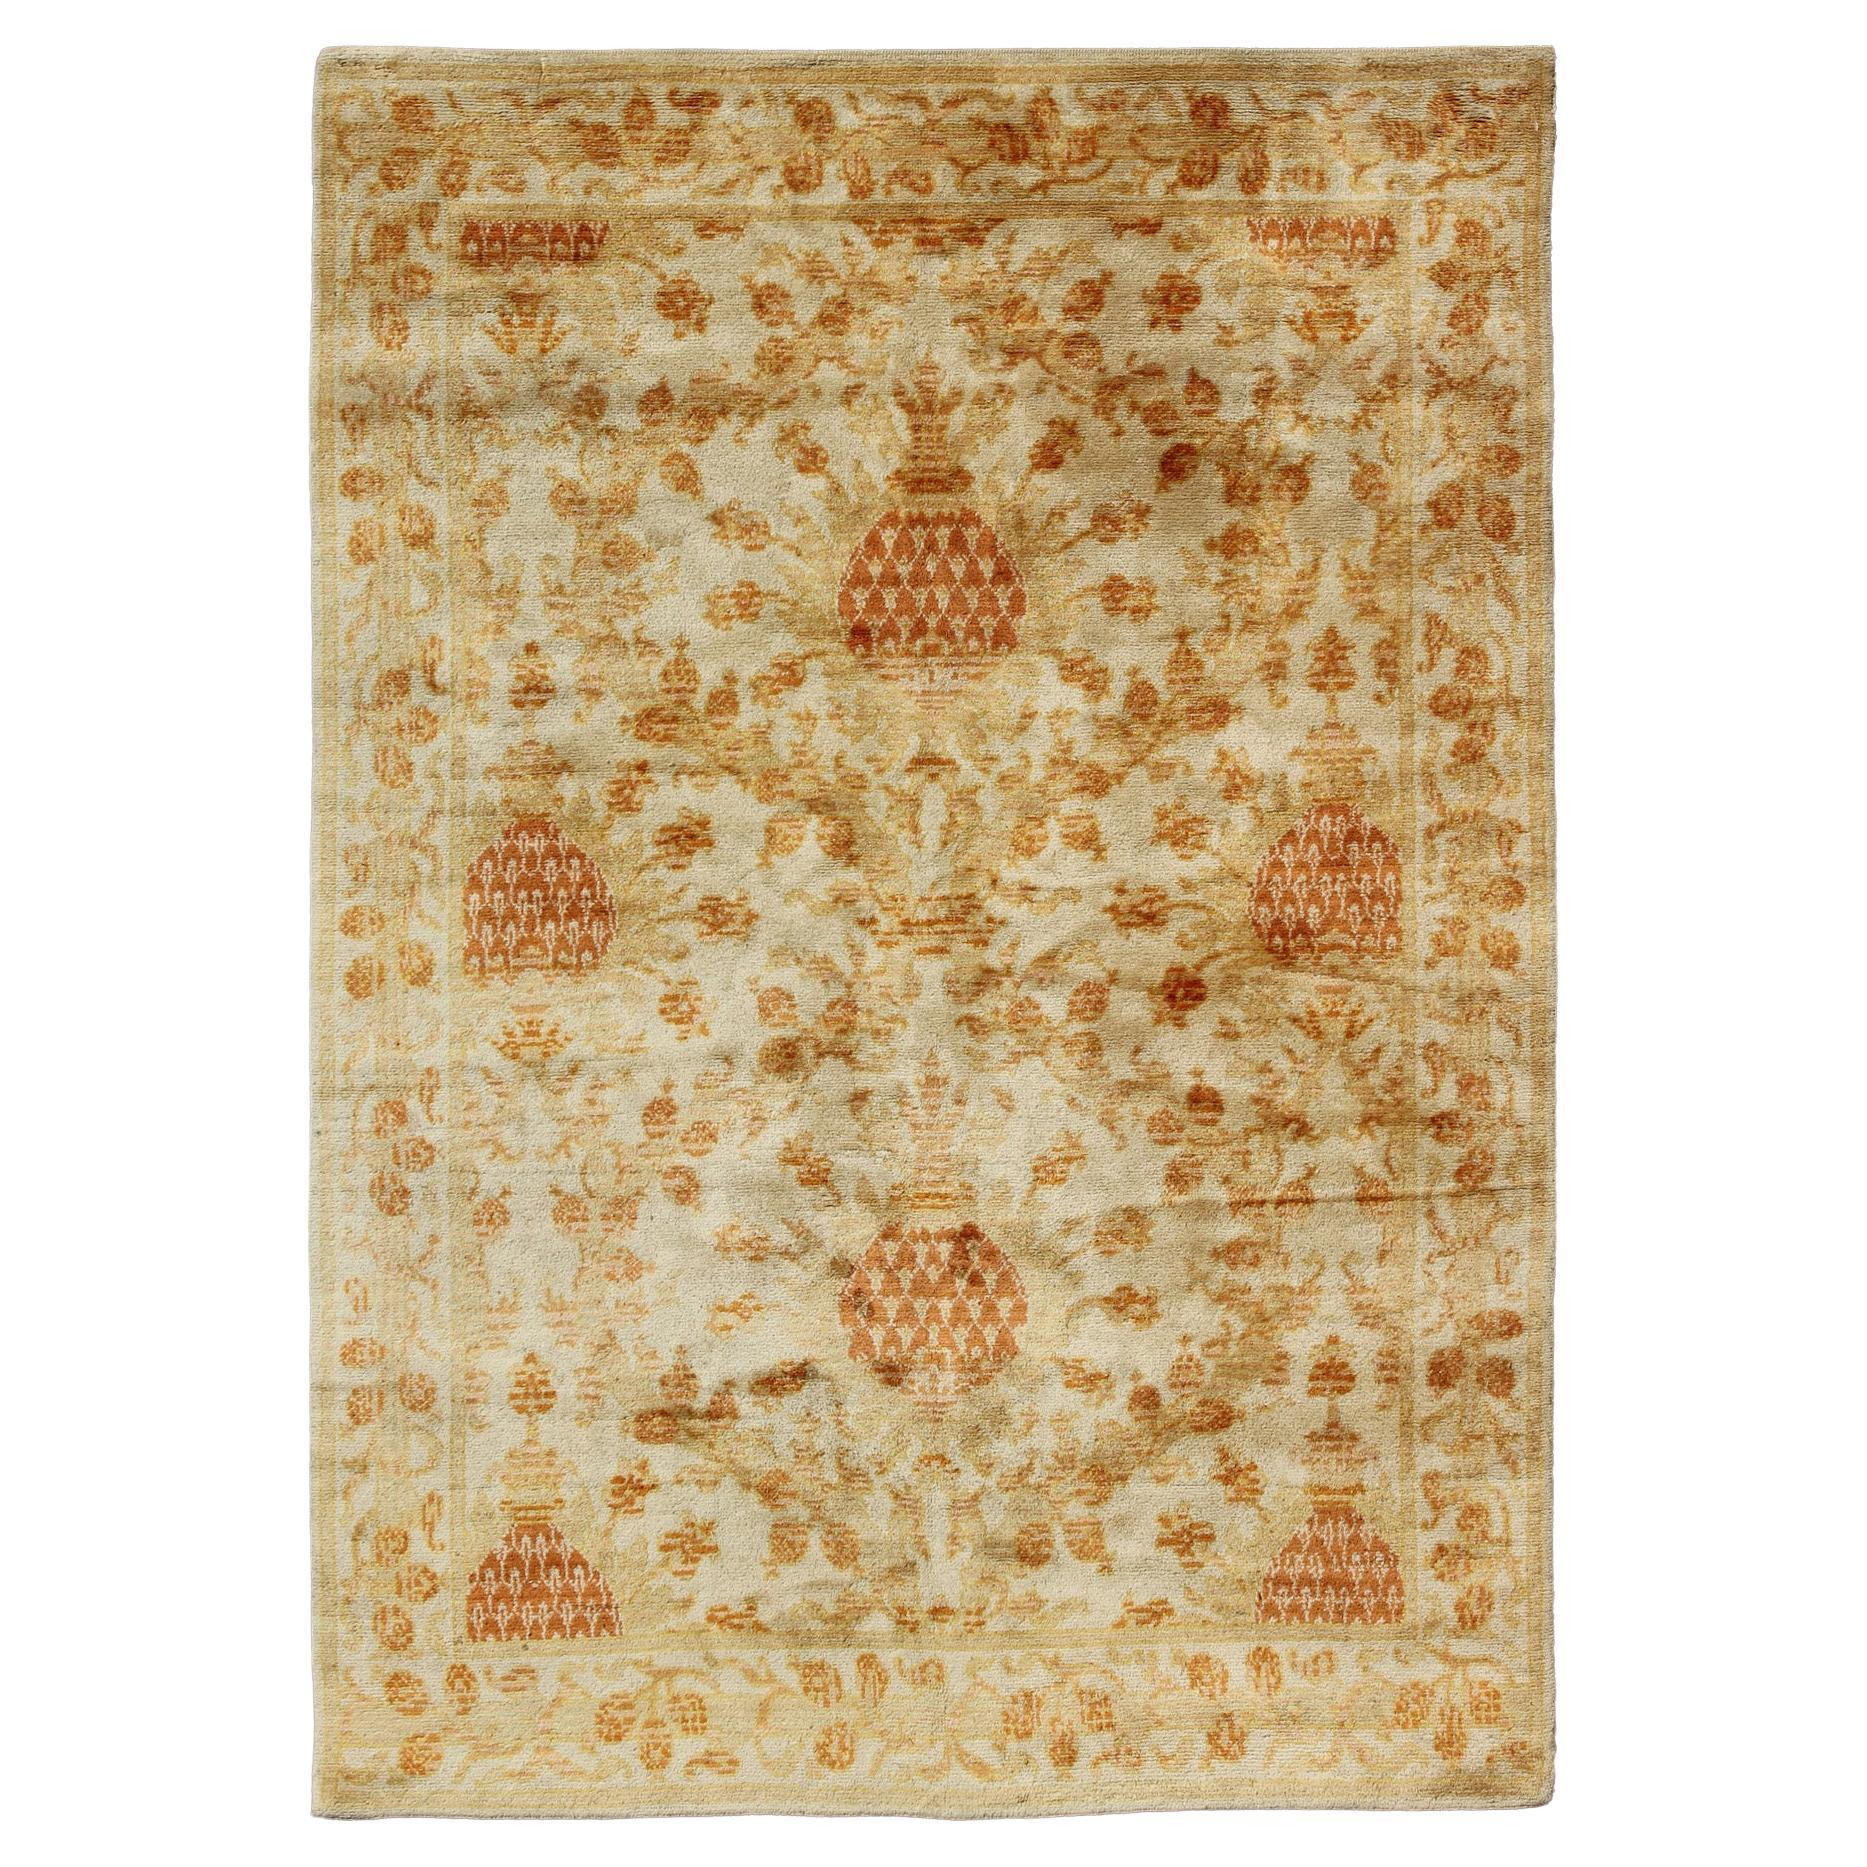 Antique Spanish European Carpet with Pineapple Design in Gold, Cream & Tangerine For Sale